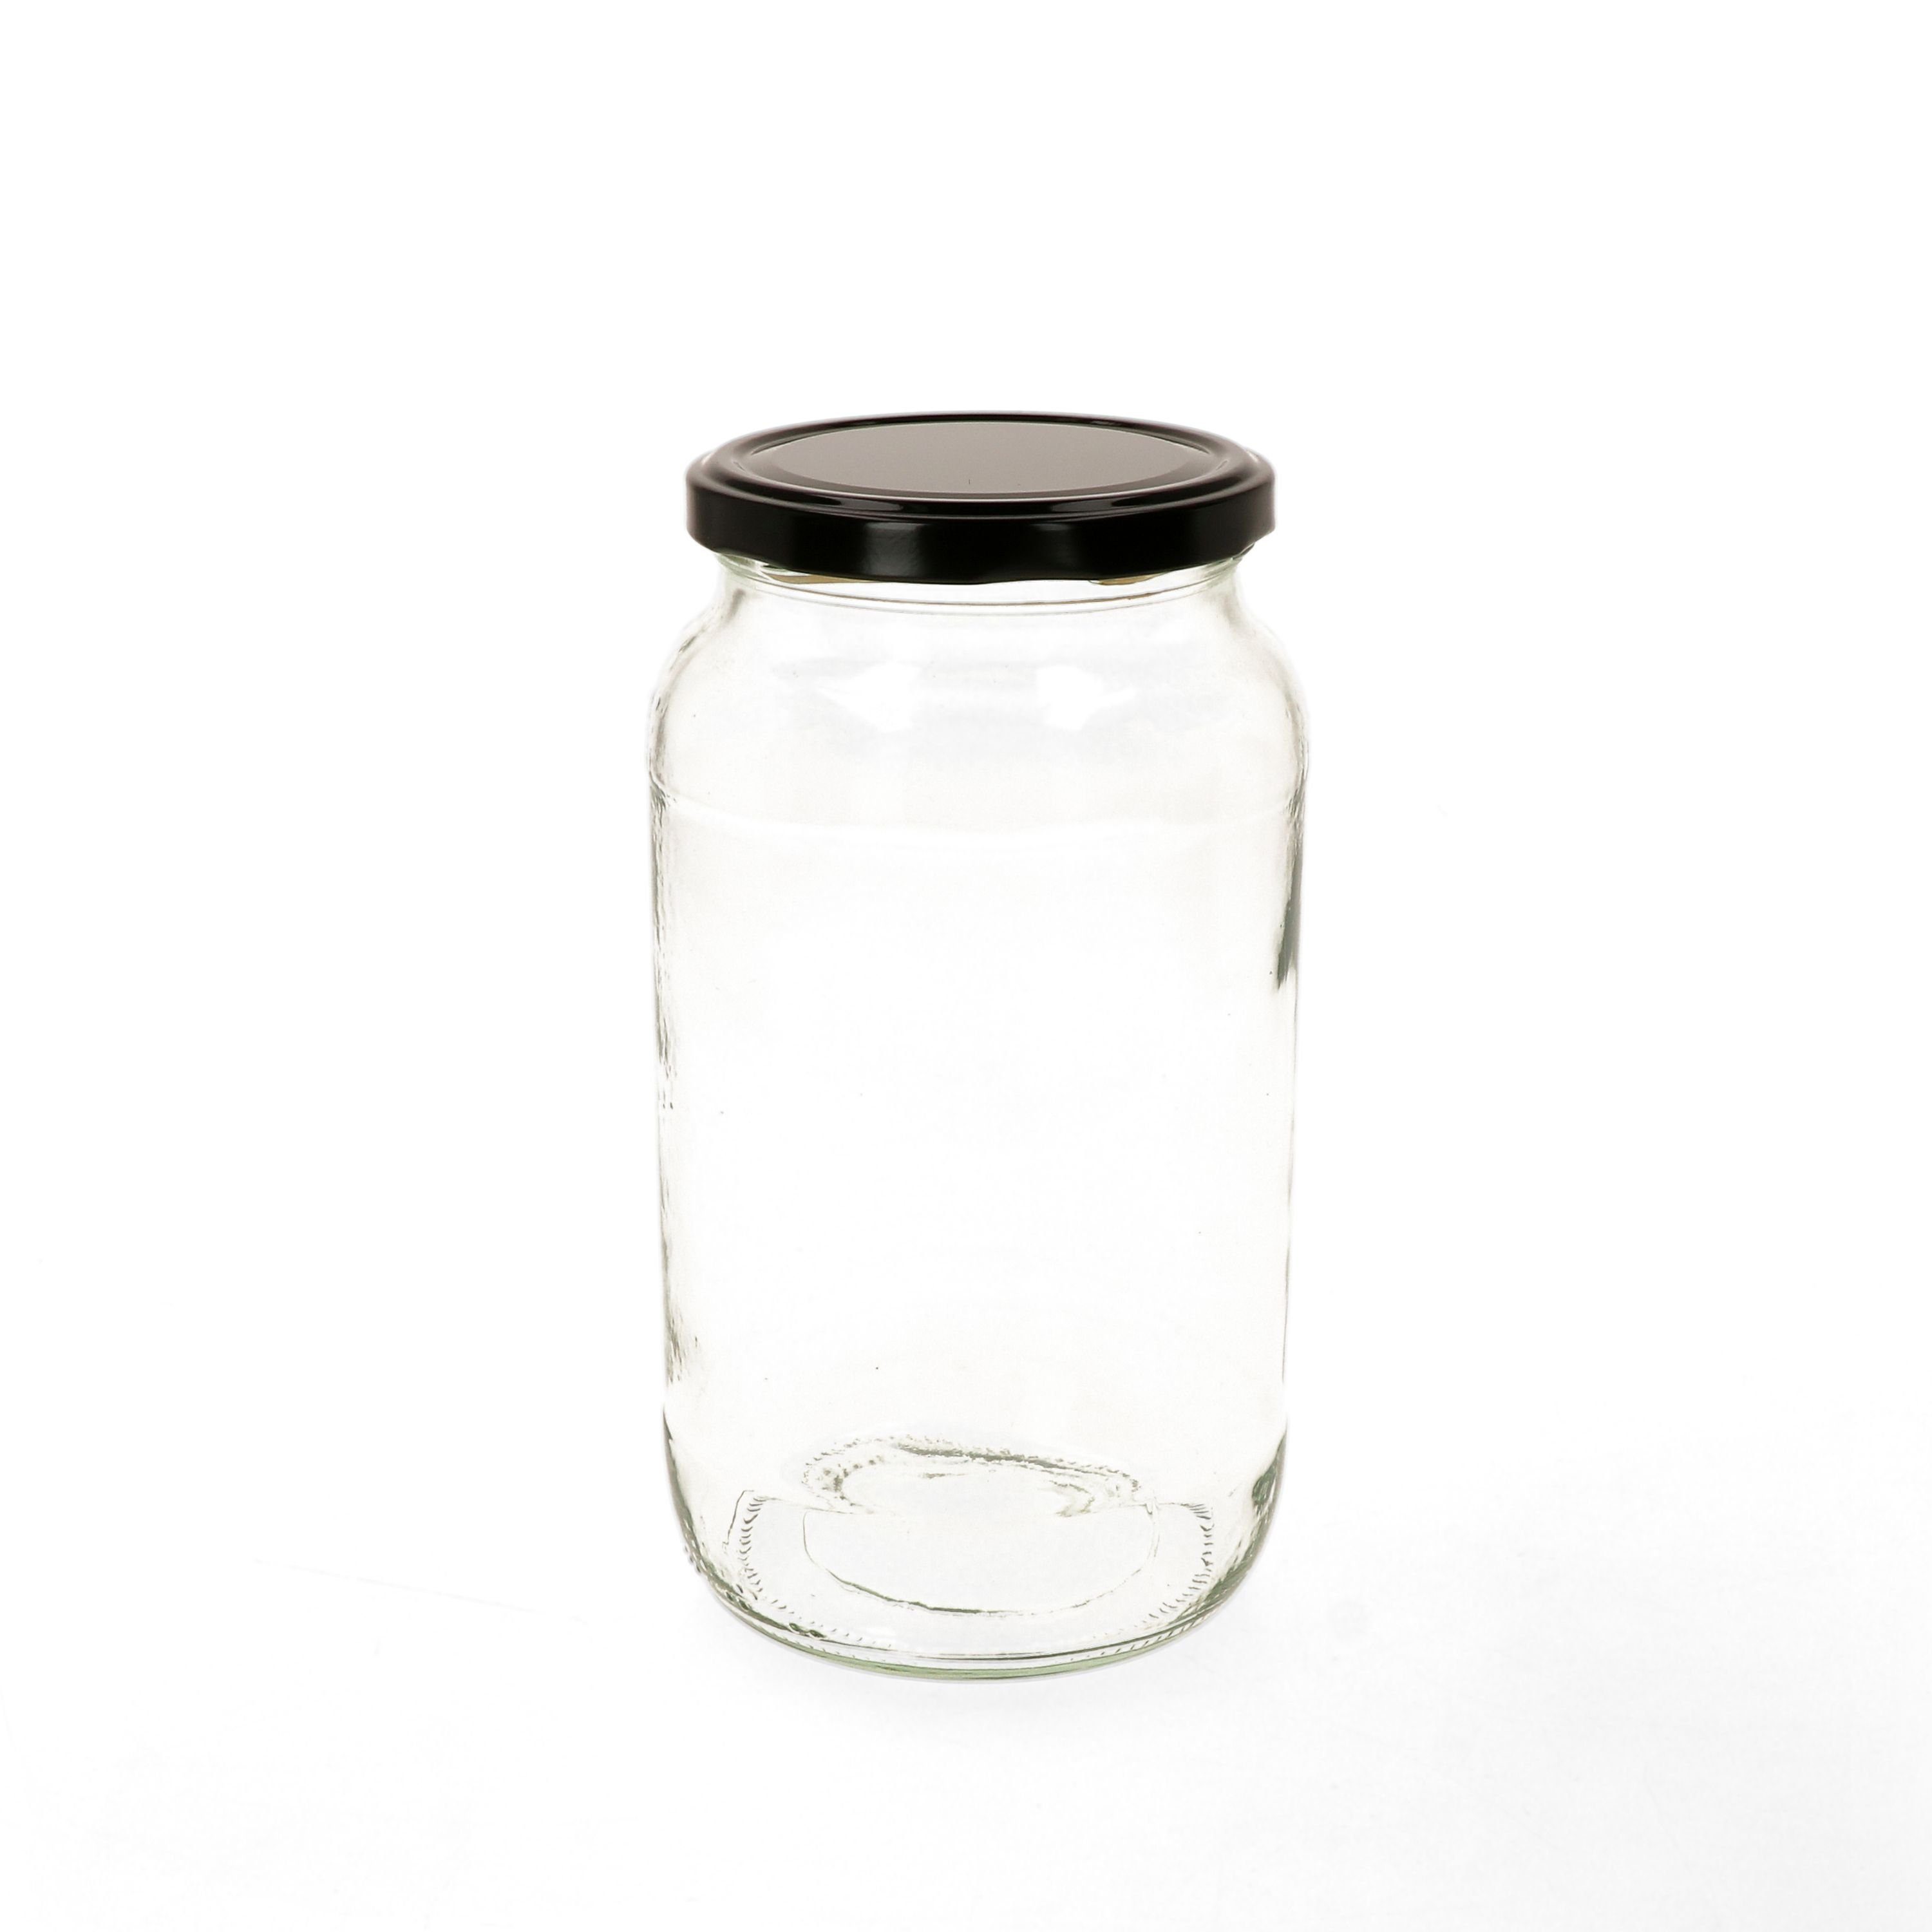 To Set 6er Einmachglas Rezeptheft, Rundglas Deckel ml 82 schwarzer Glas 1062 MamboCat incl.